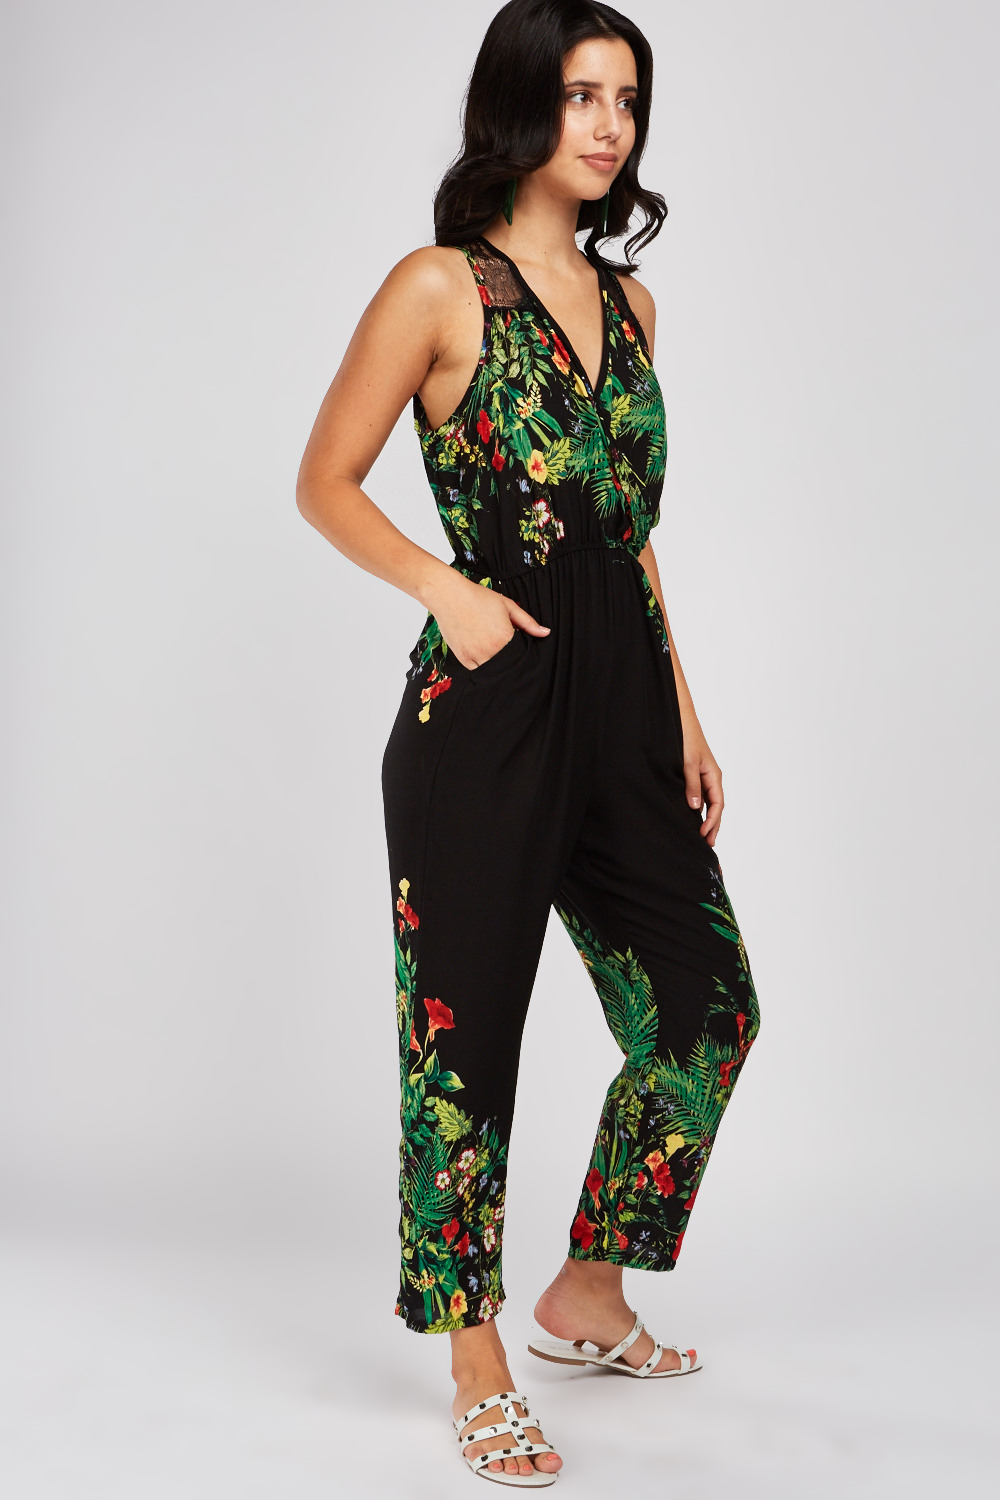 Tropical Print Lace Trim Jumpsuit - Just $6